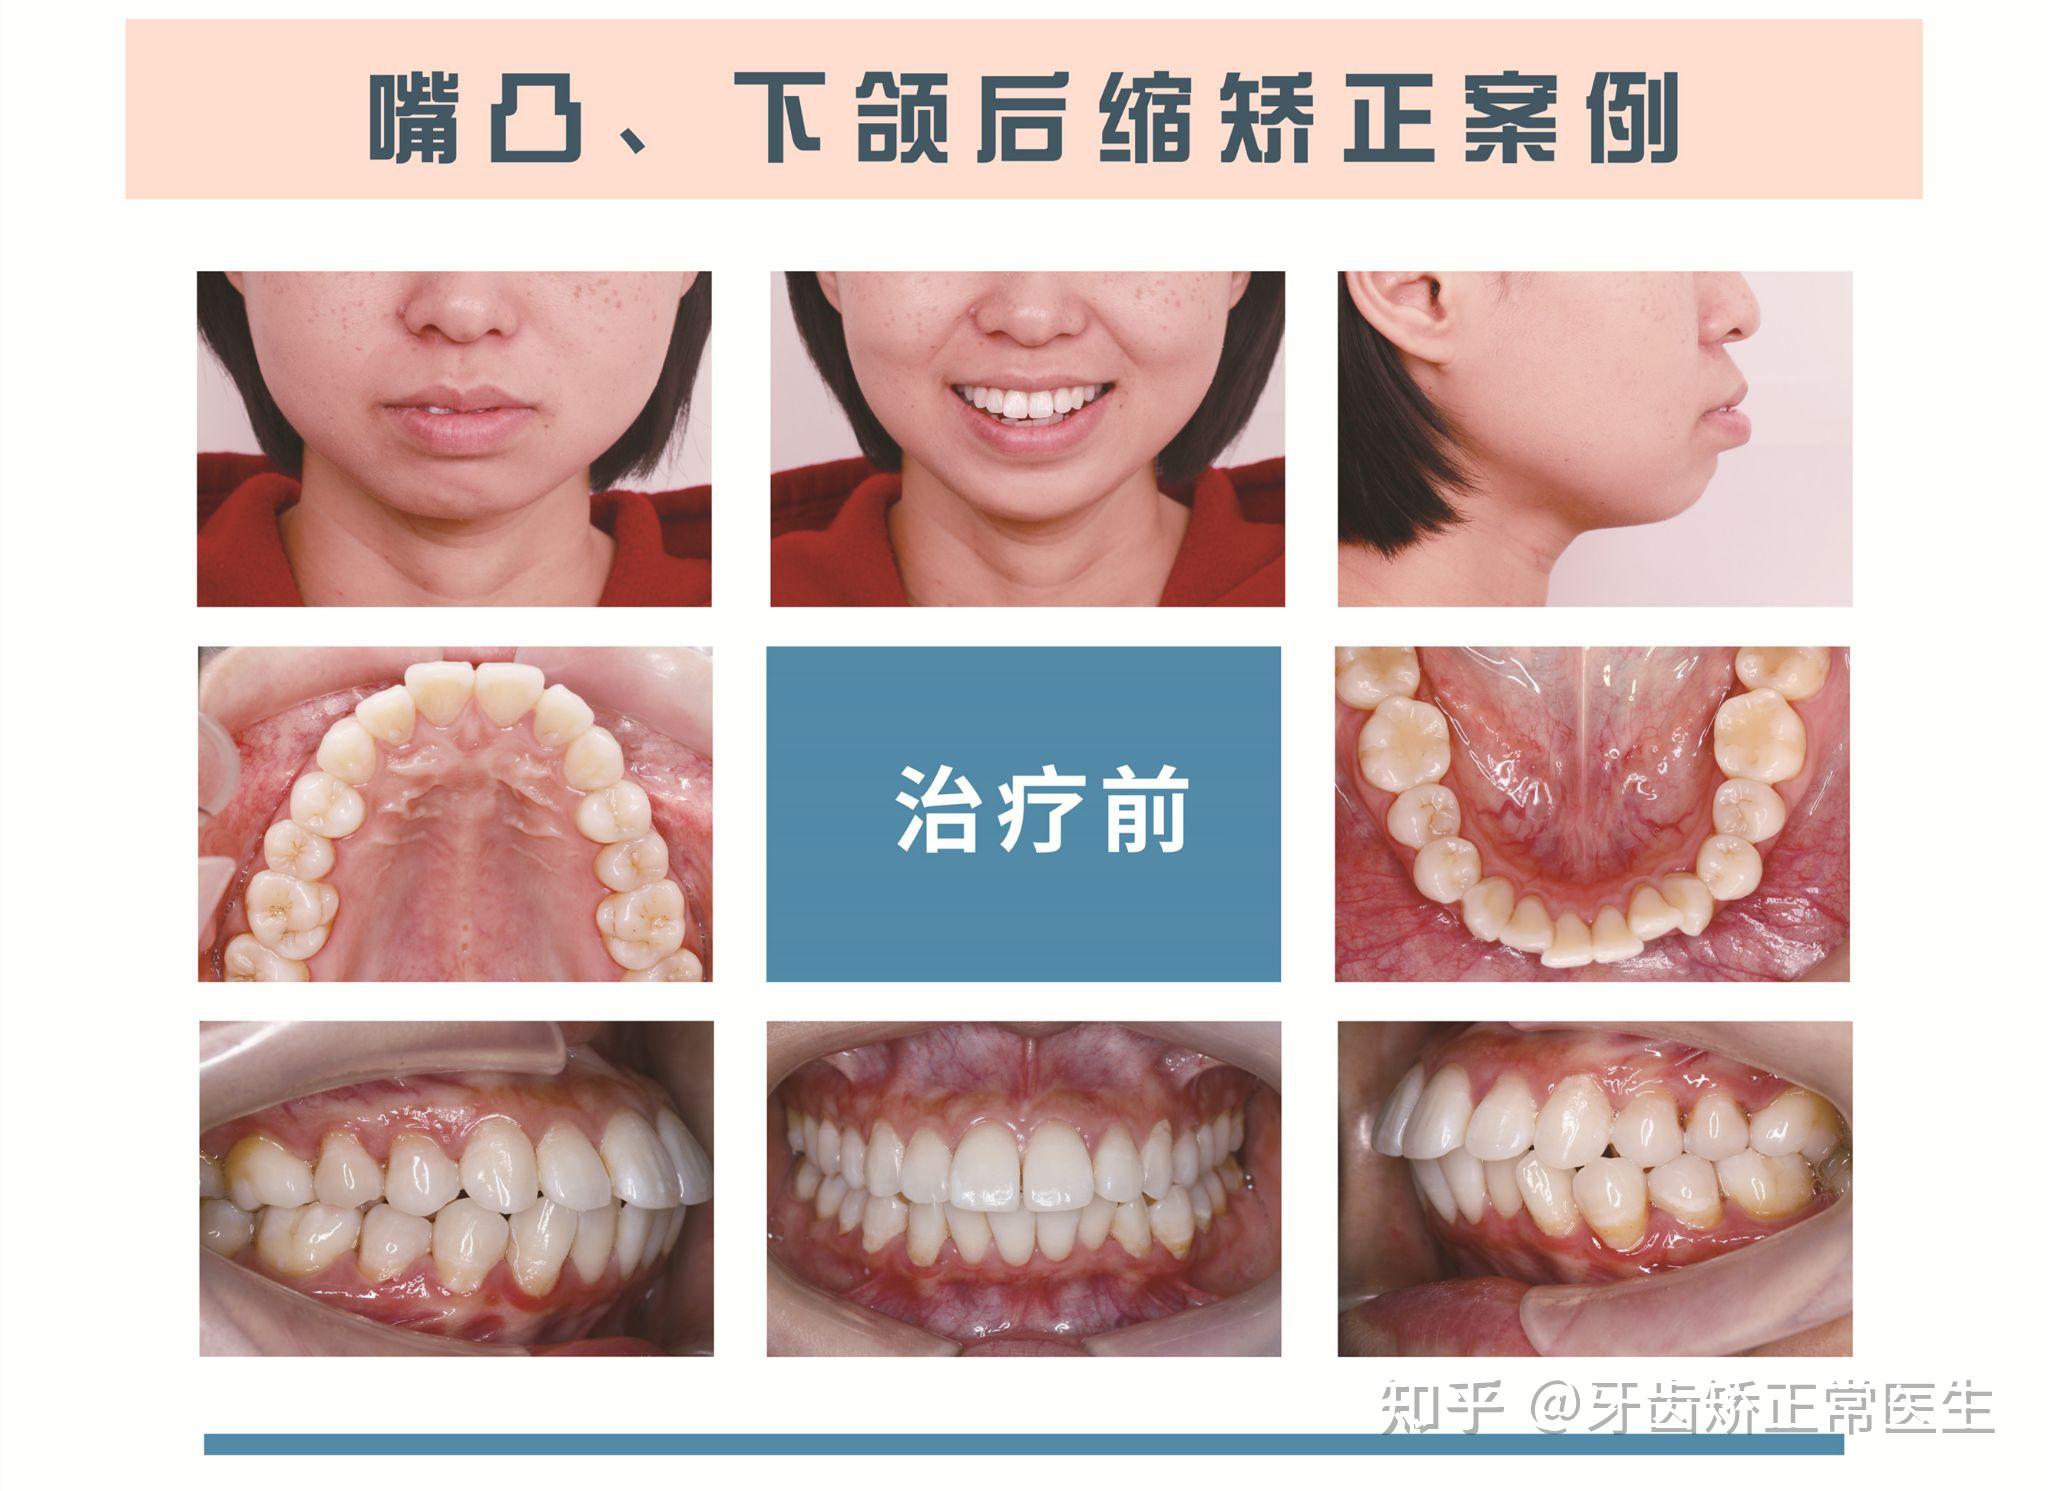 郑州牙齿矫正常大桐成年女性嘴凸下颌后缩矫正案例